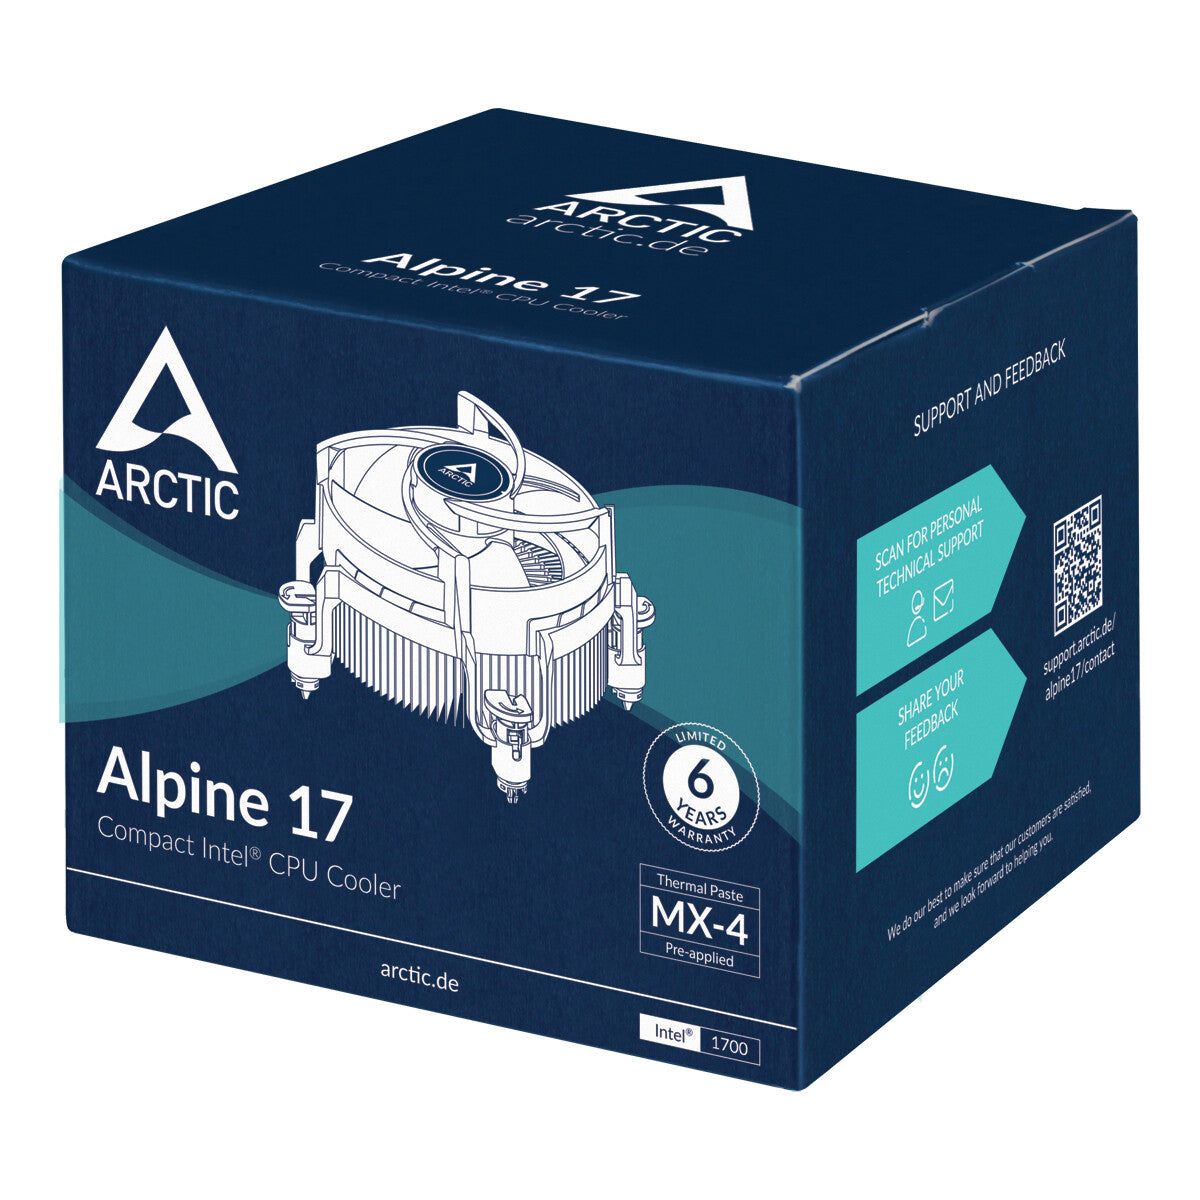 ARCTIC Alpine 17 - Compact Air Processor Cooler - 92mm